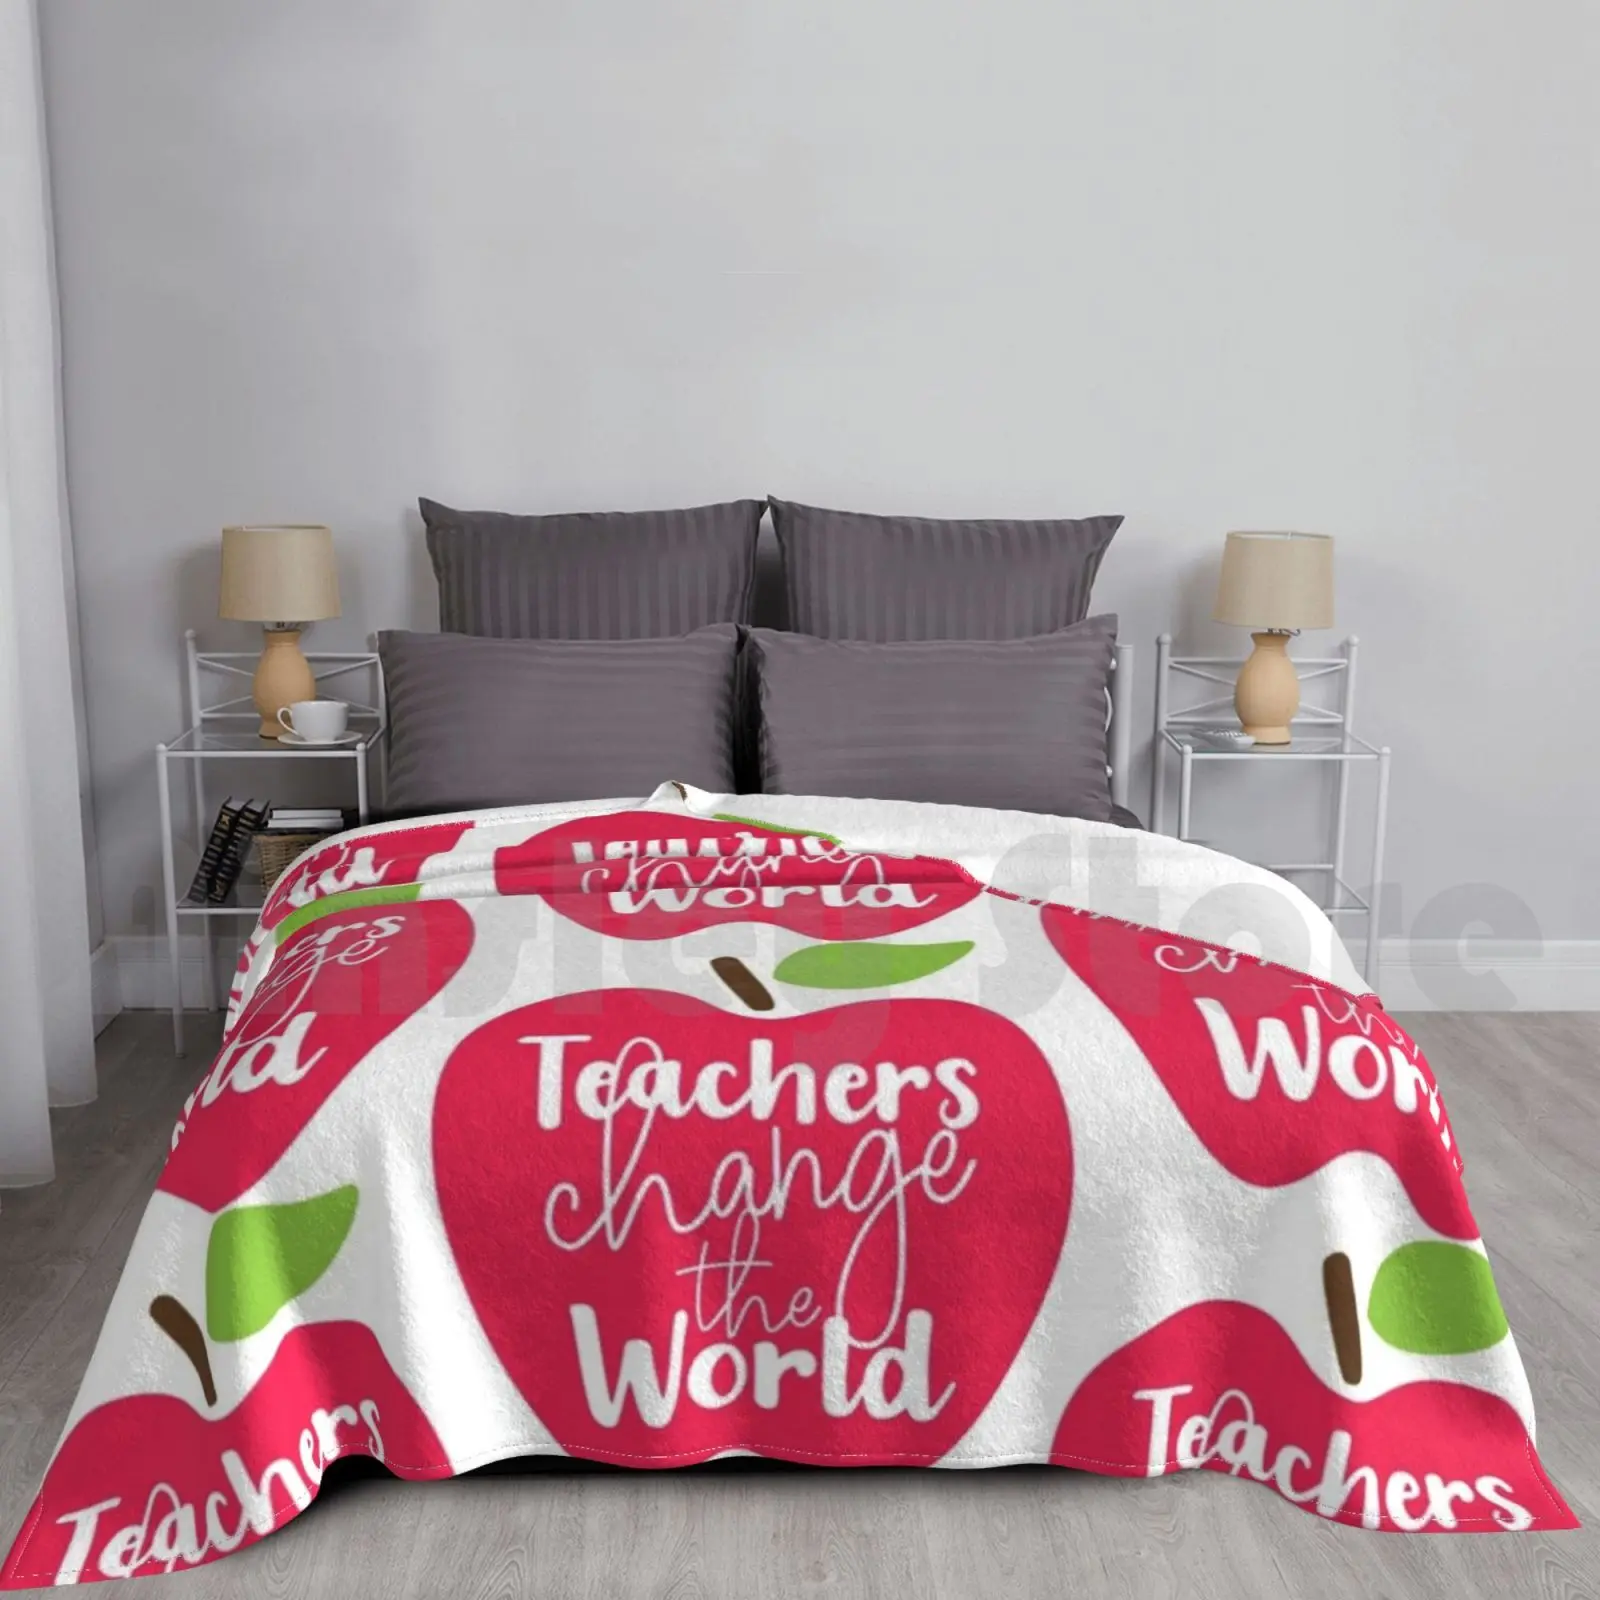 

Одеяло меняющее мир для преподавателей, для дивана, кровати, путешествий, учебы, обучения английский, мемы для учителей английского языка